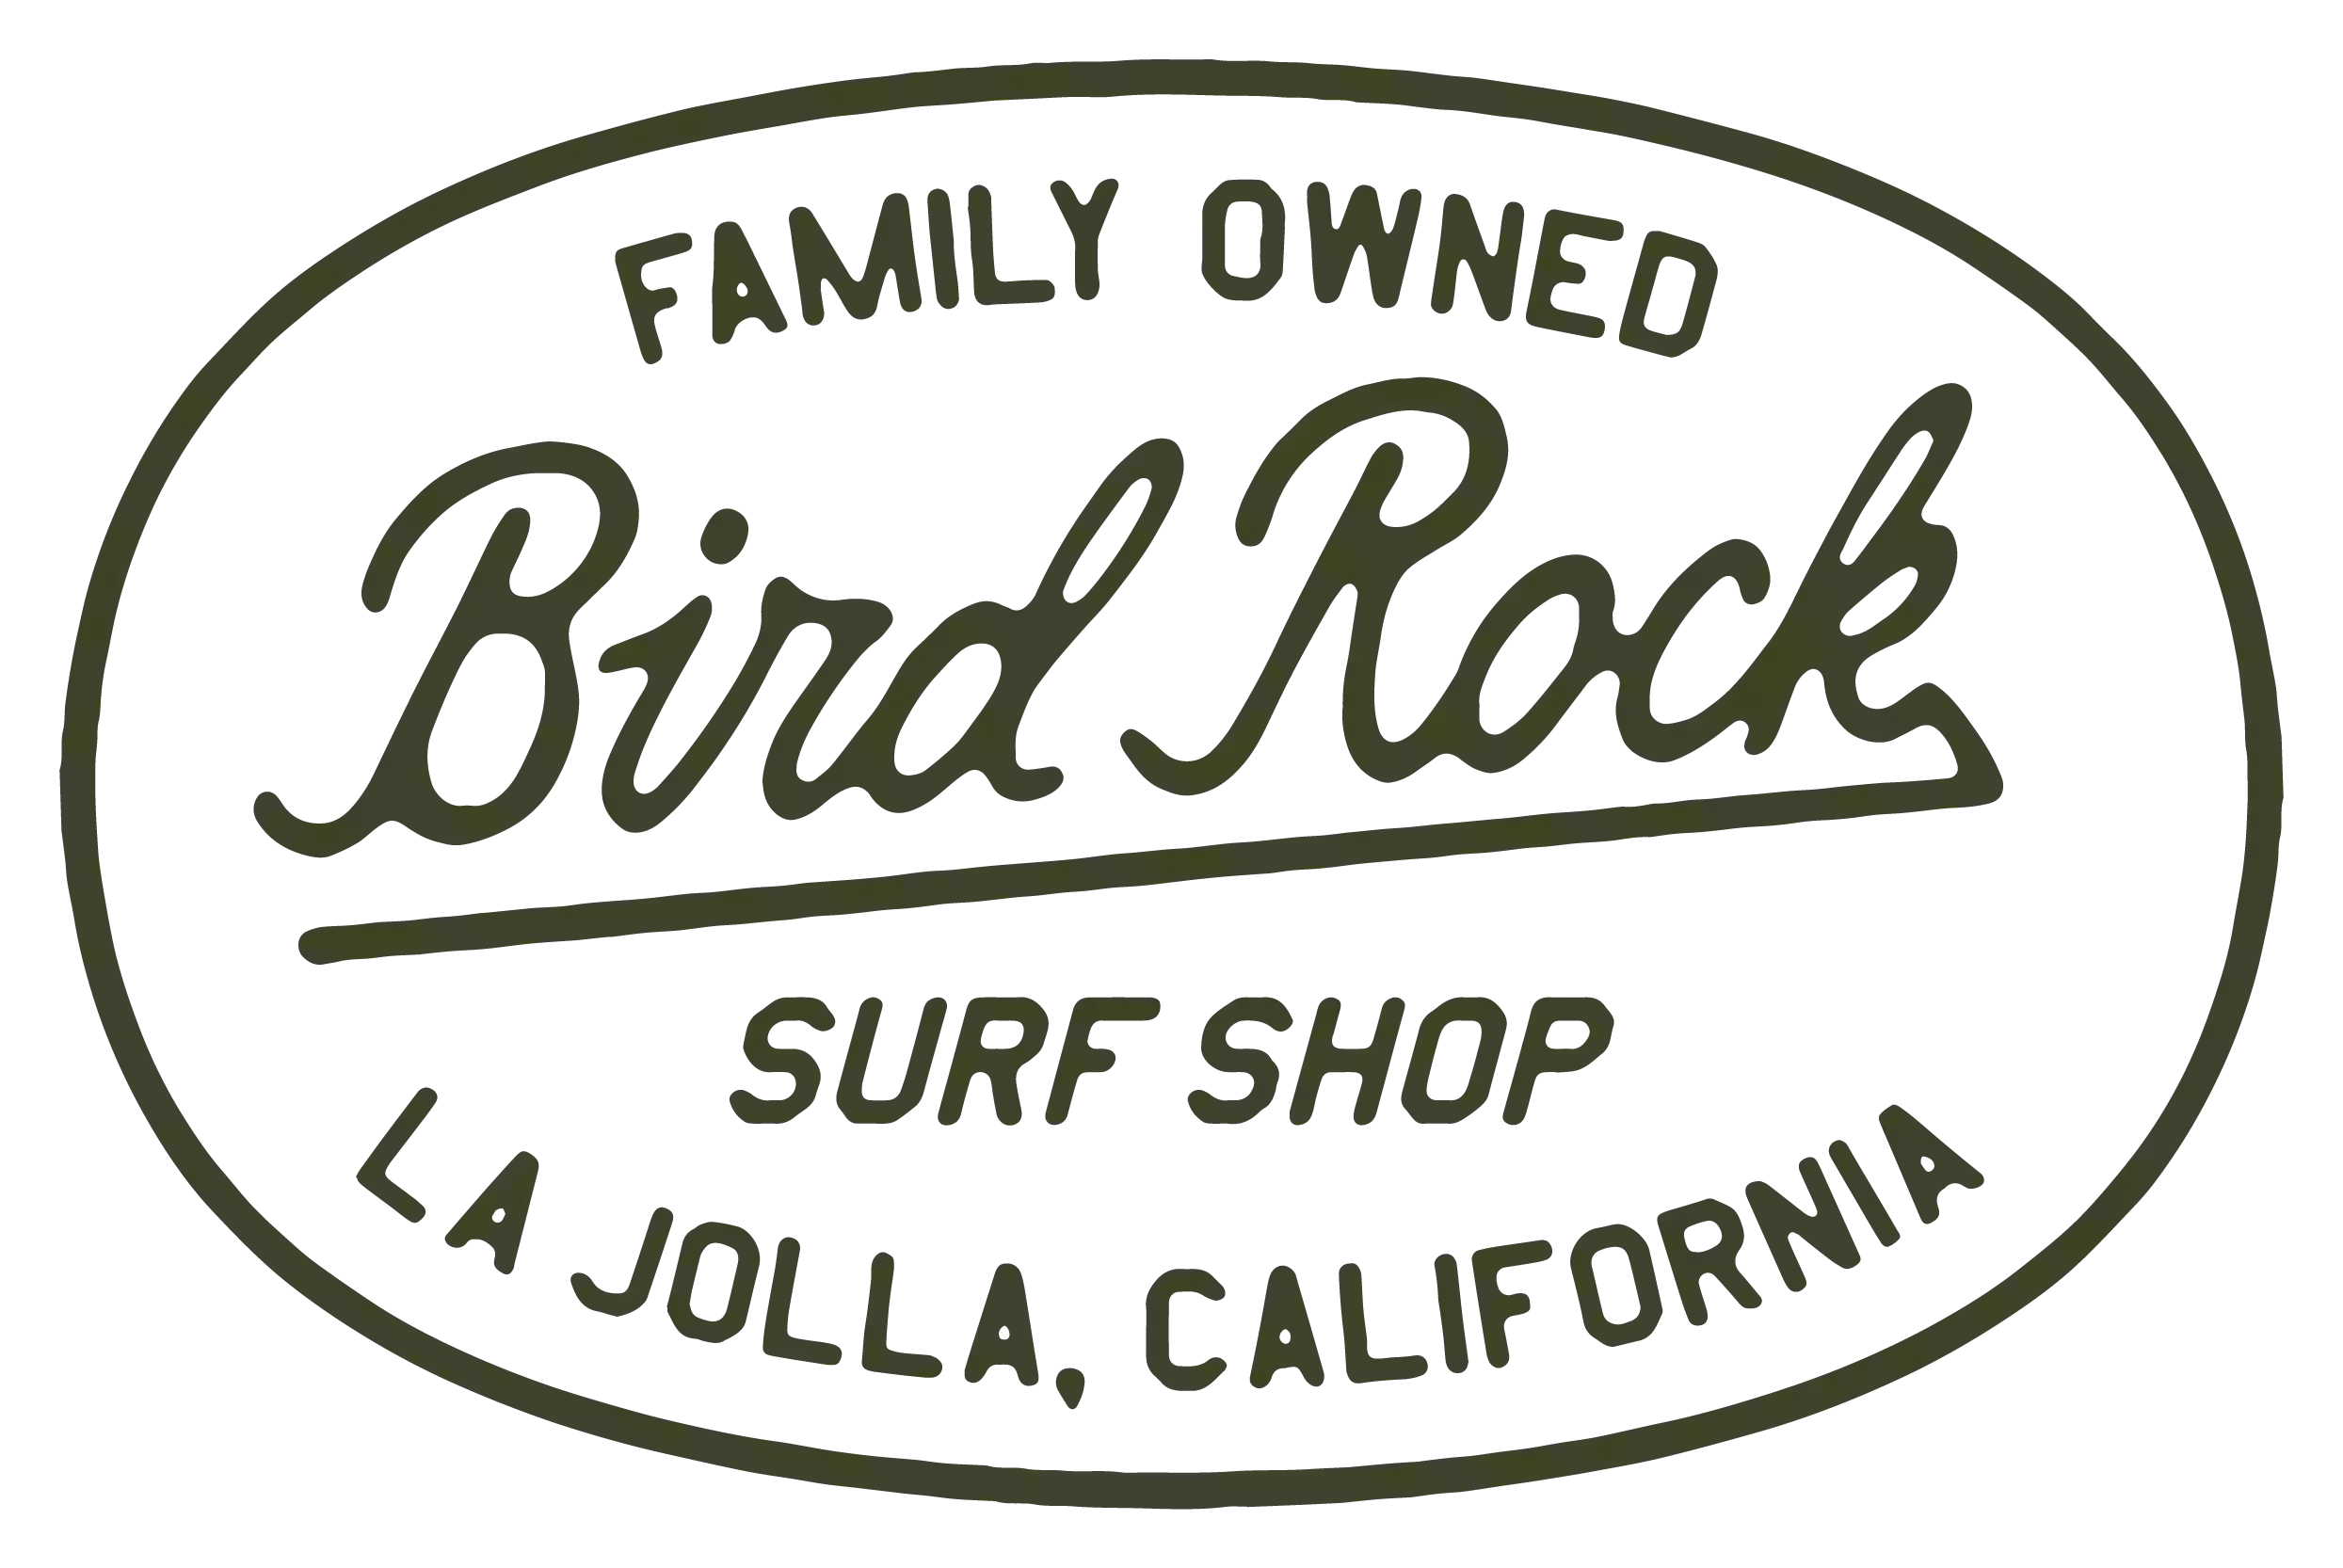 Bird Rock Surf Shop